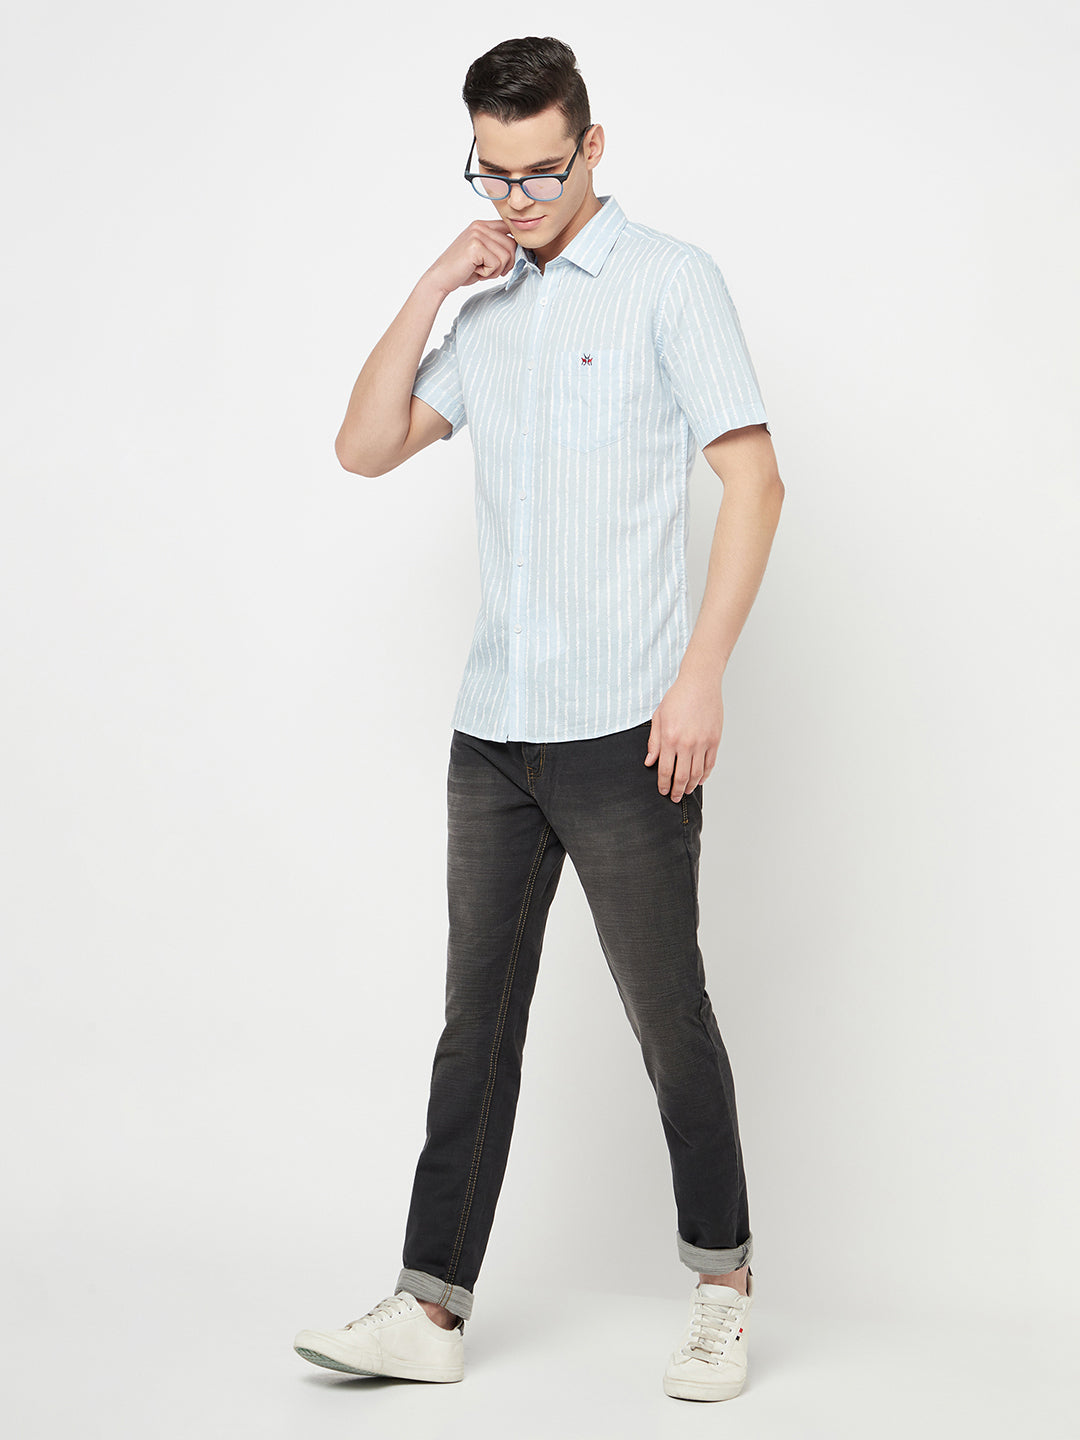 Blue Striped Linen Shirt - Men Shirts